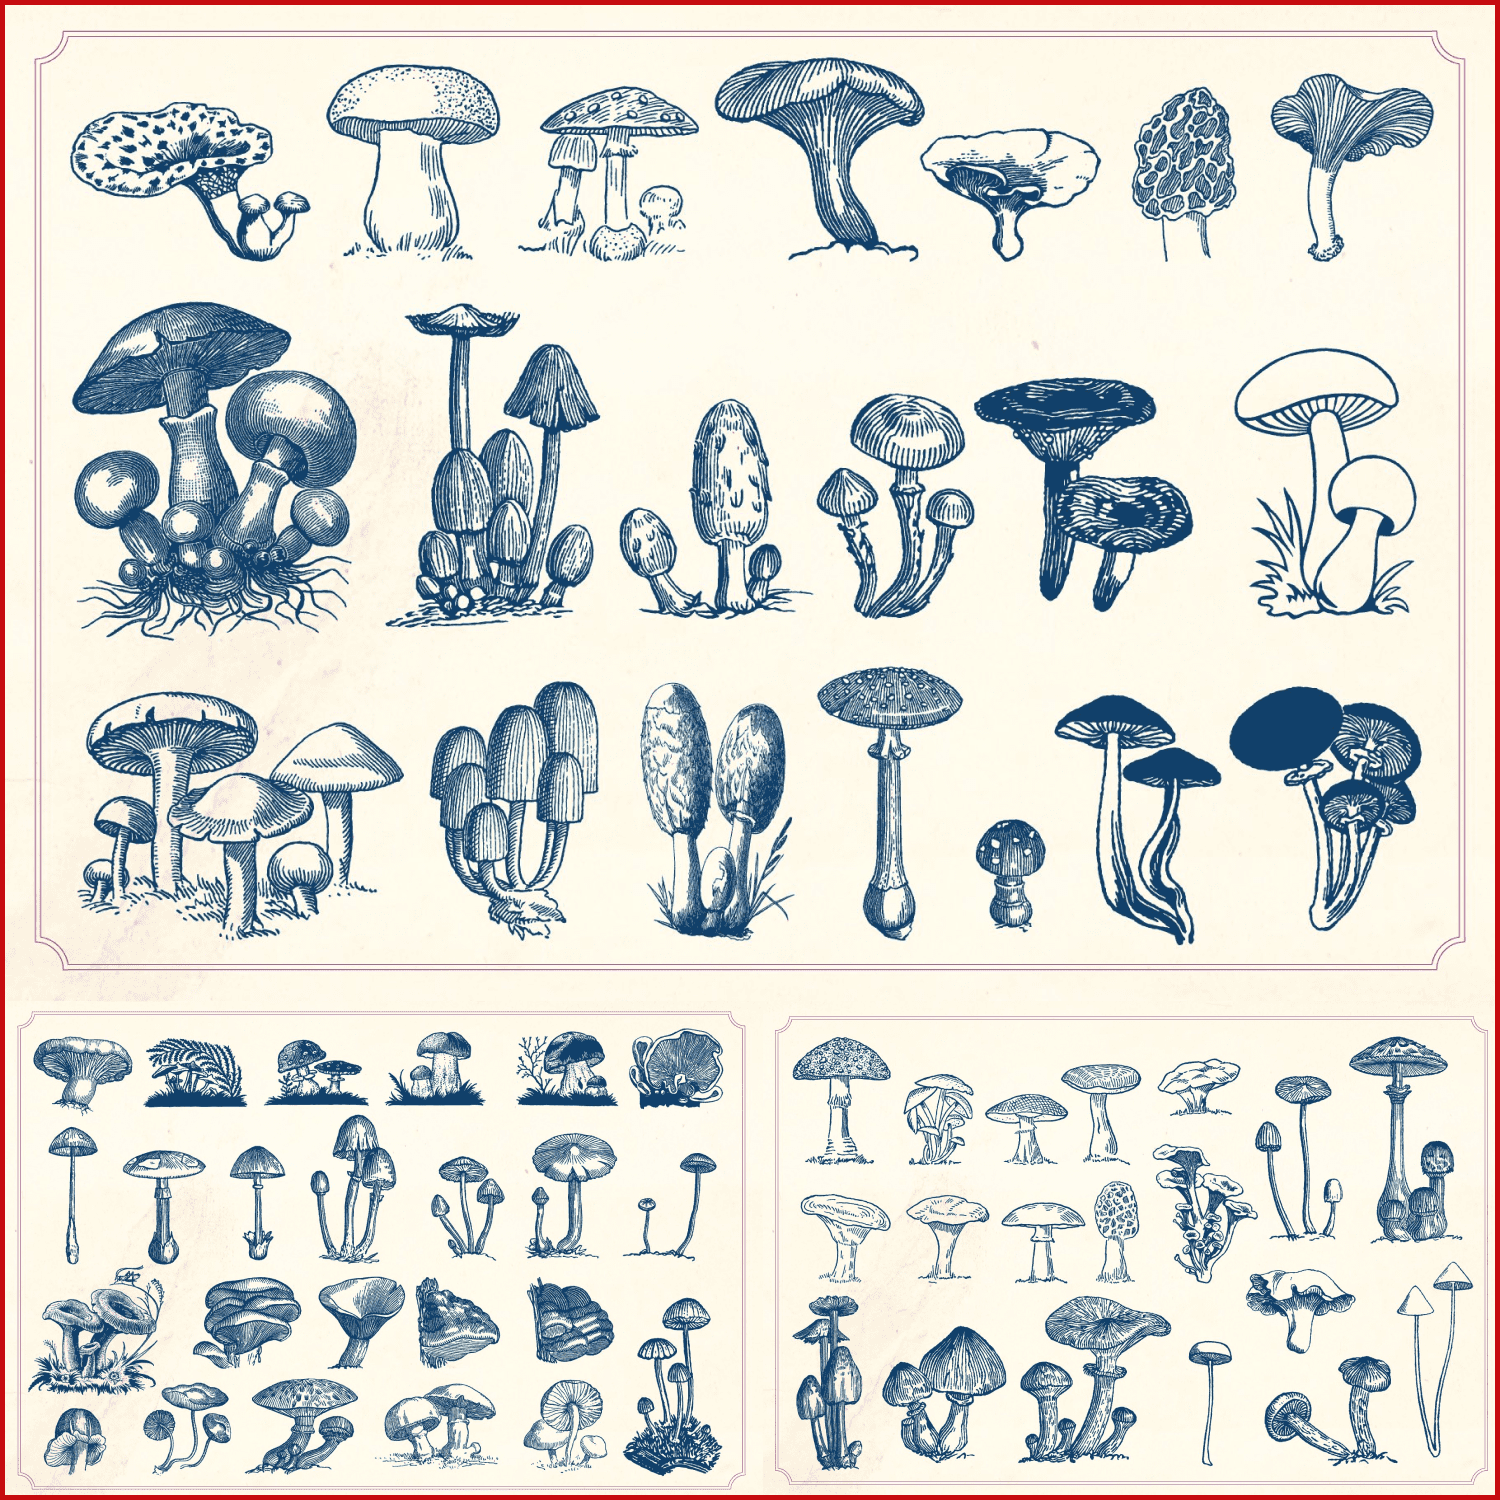 Vintage Mushrooms & Fungi created by Mr Vintage.